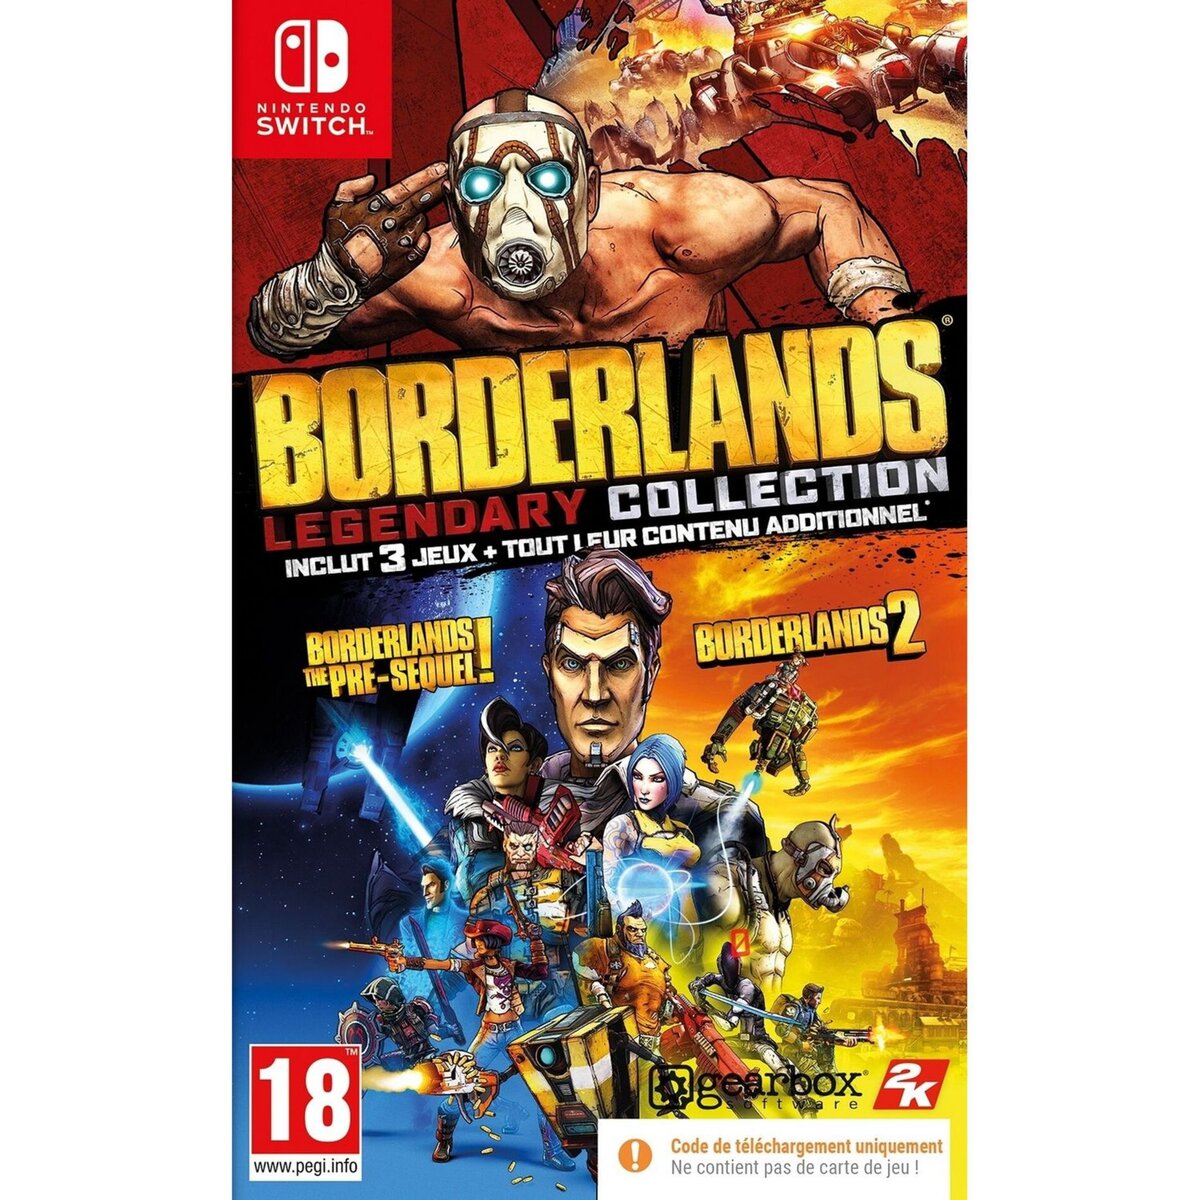 Borderland Legendary Collection - Code de téléchargement